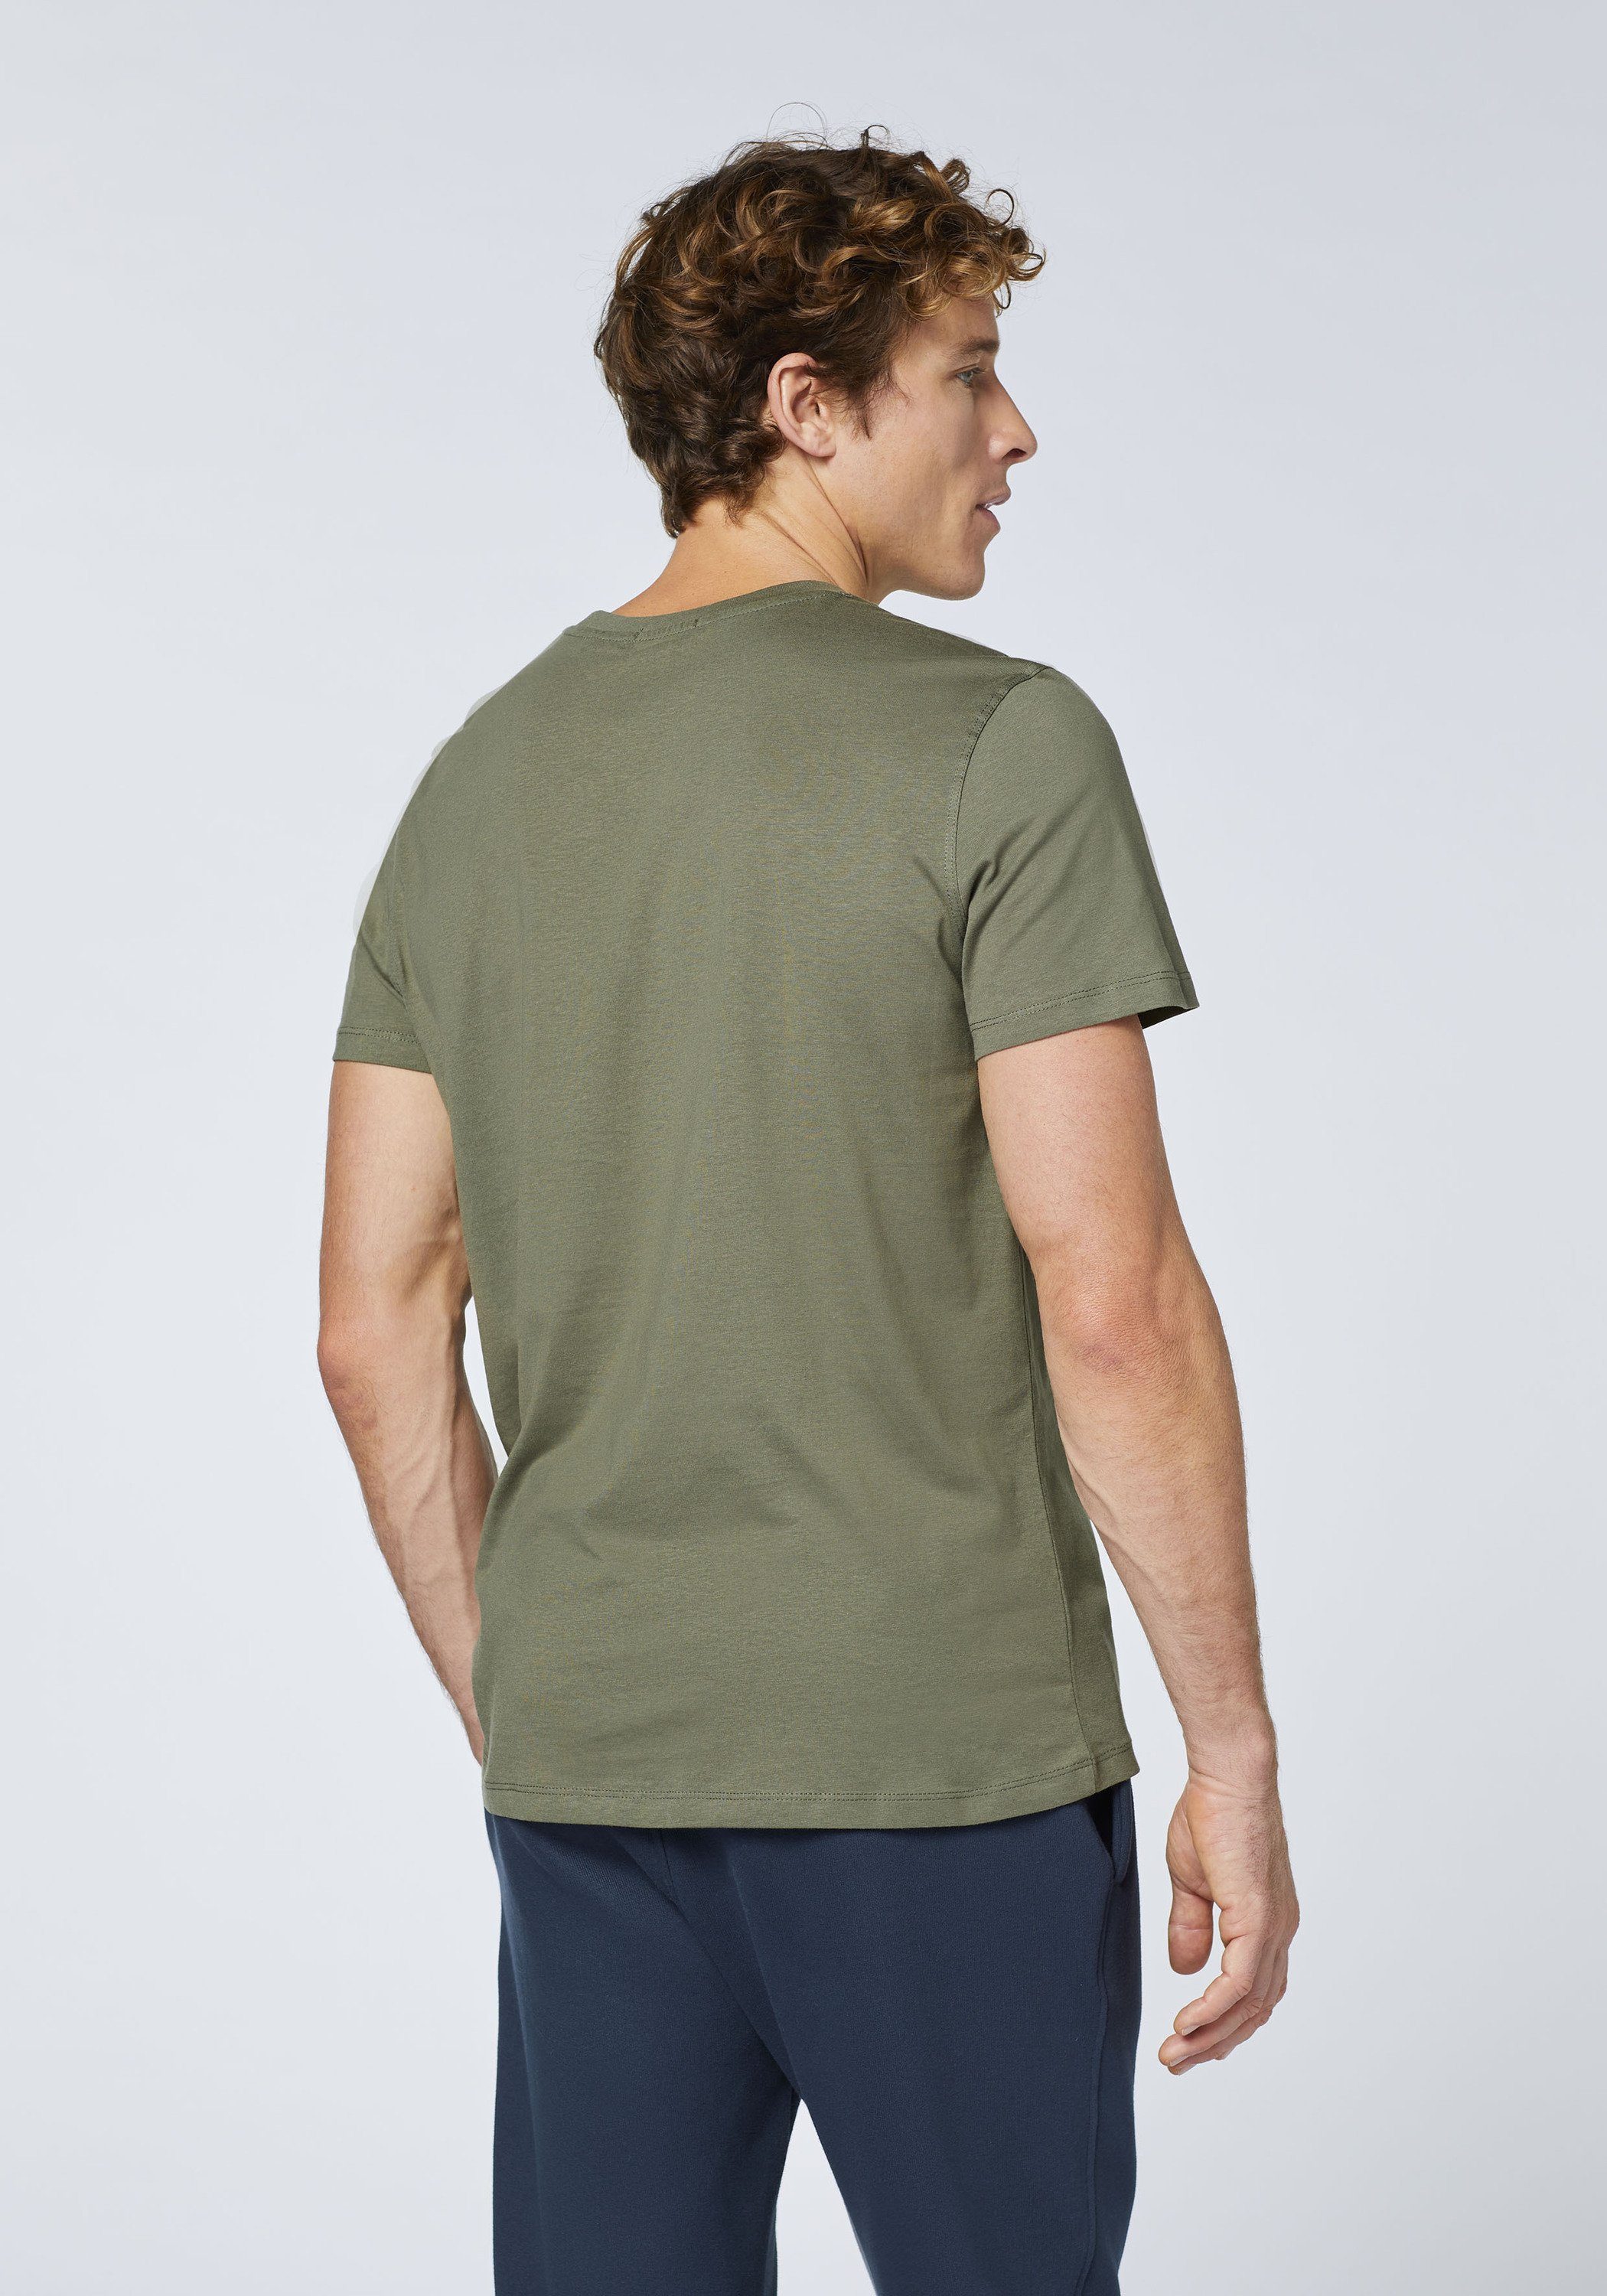 Chiemsee Print-Shirt T-Shirt mit Label-Schriftzug 18-0515 Olive 1 Dusty